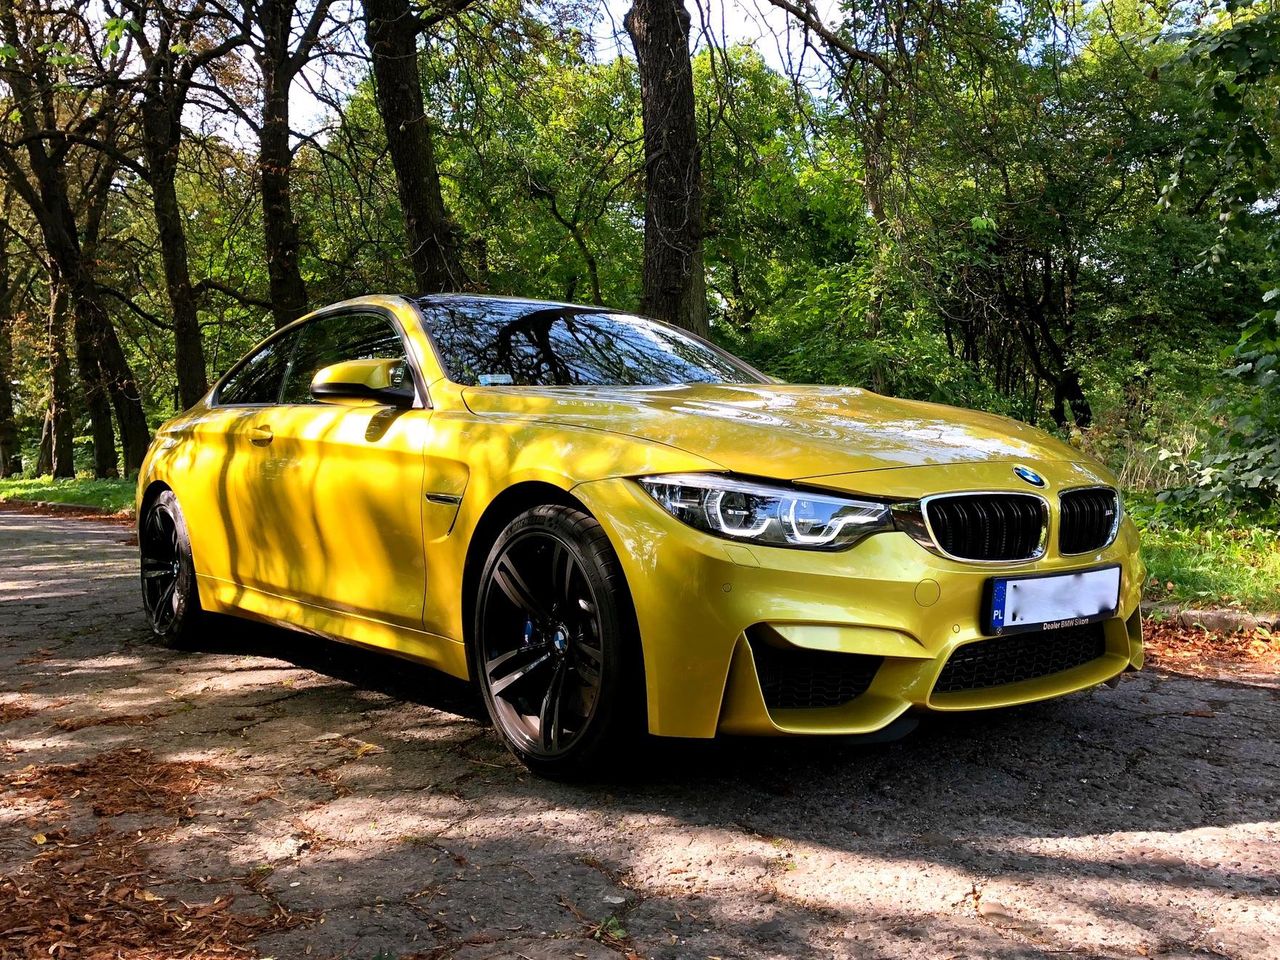 W Gliwicach ukradli żółte BMW M4. Na znalazcę czeka nagroda